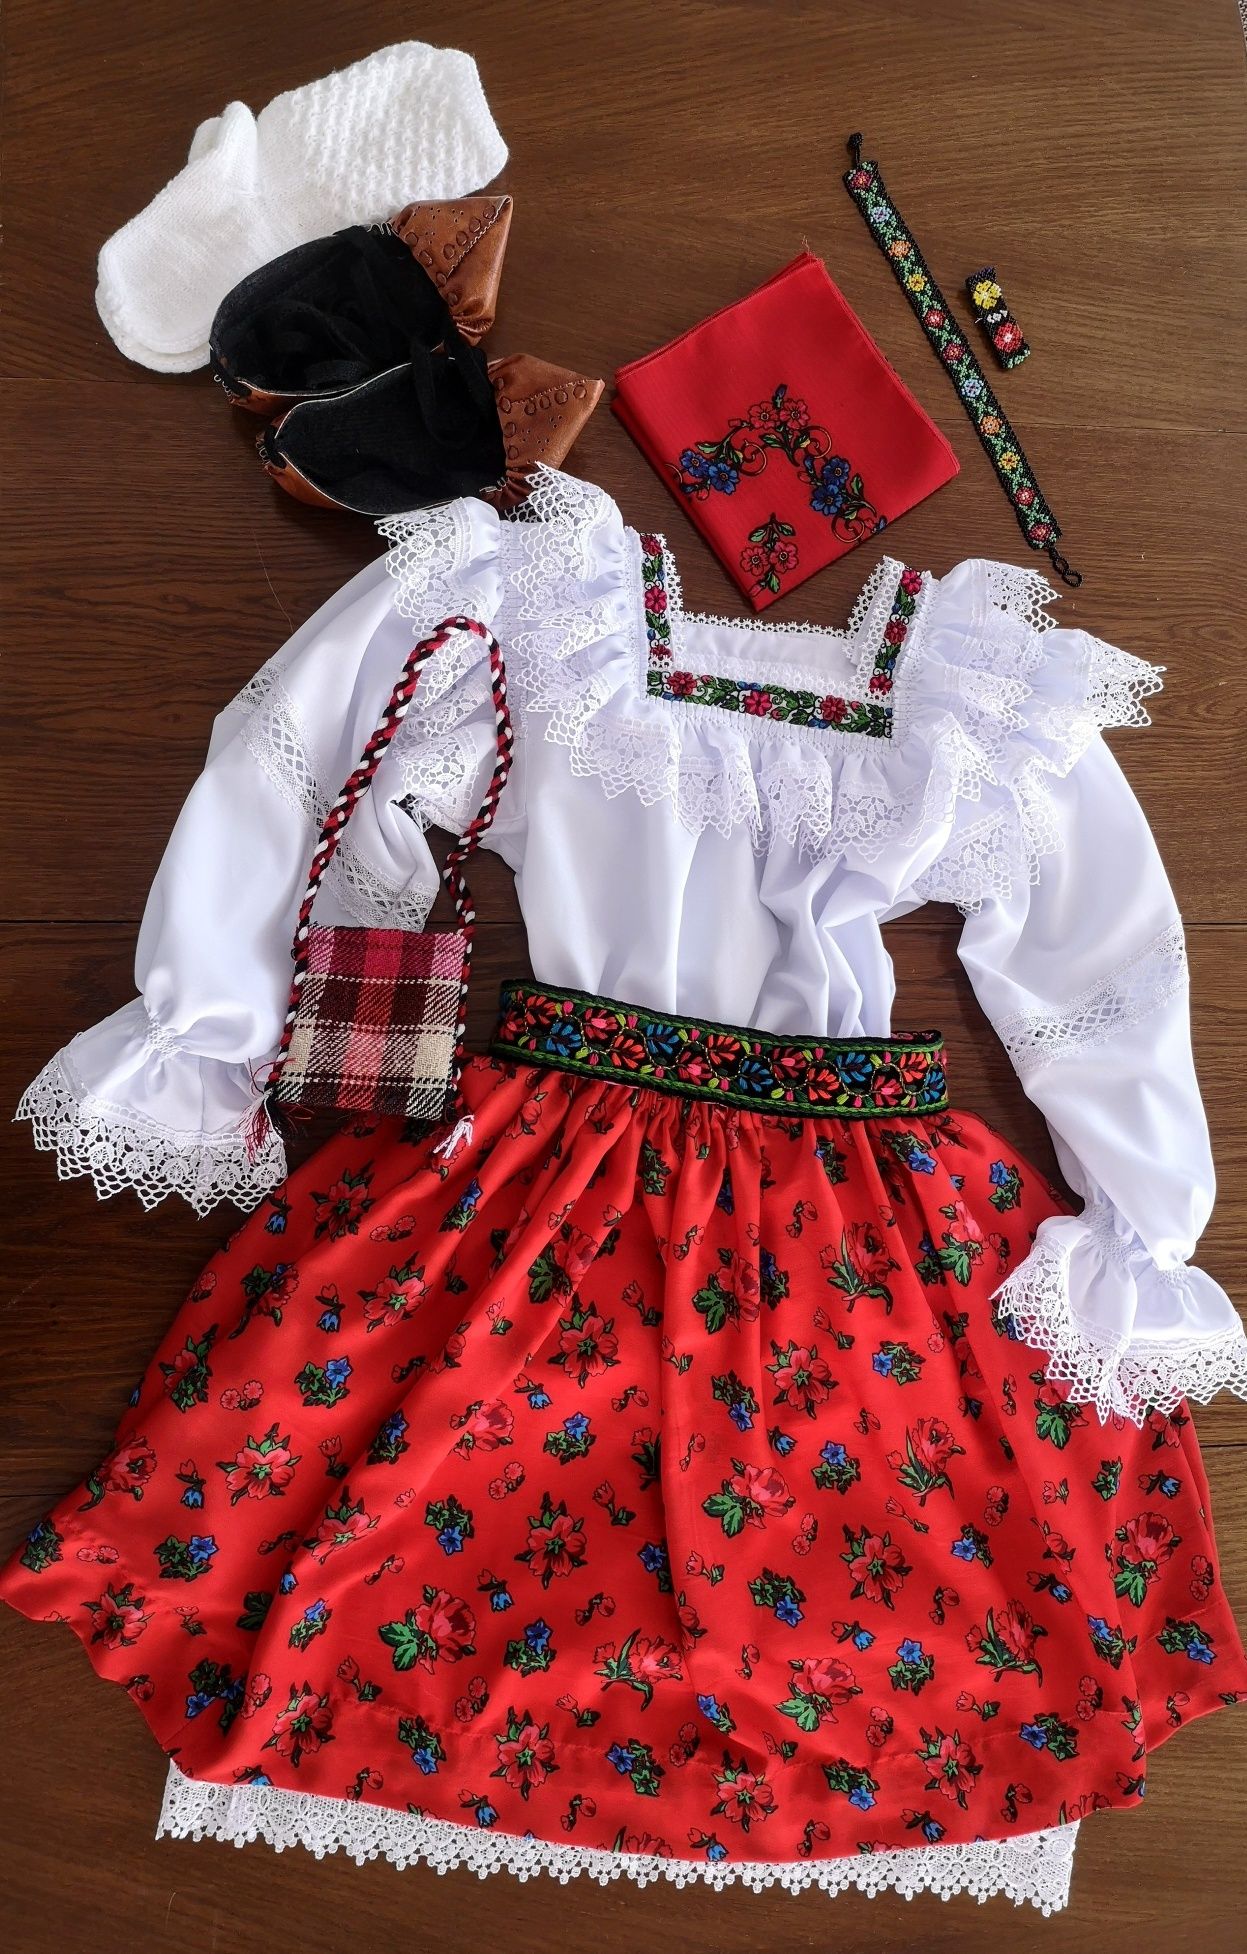 Costum popular femei complet de Maramureș